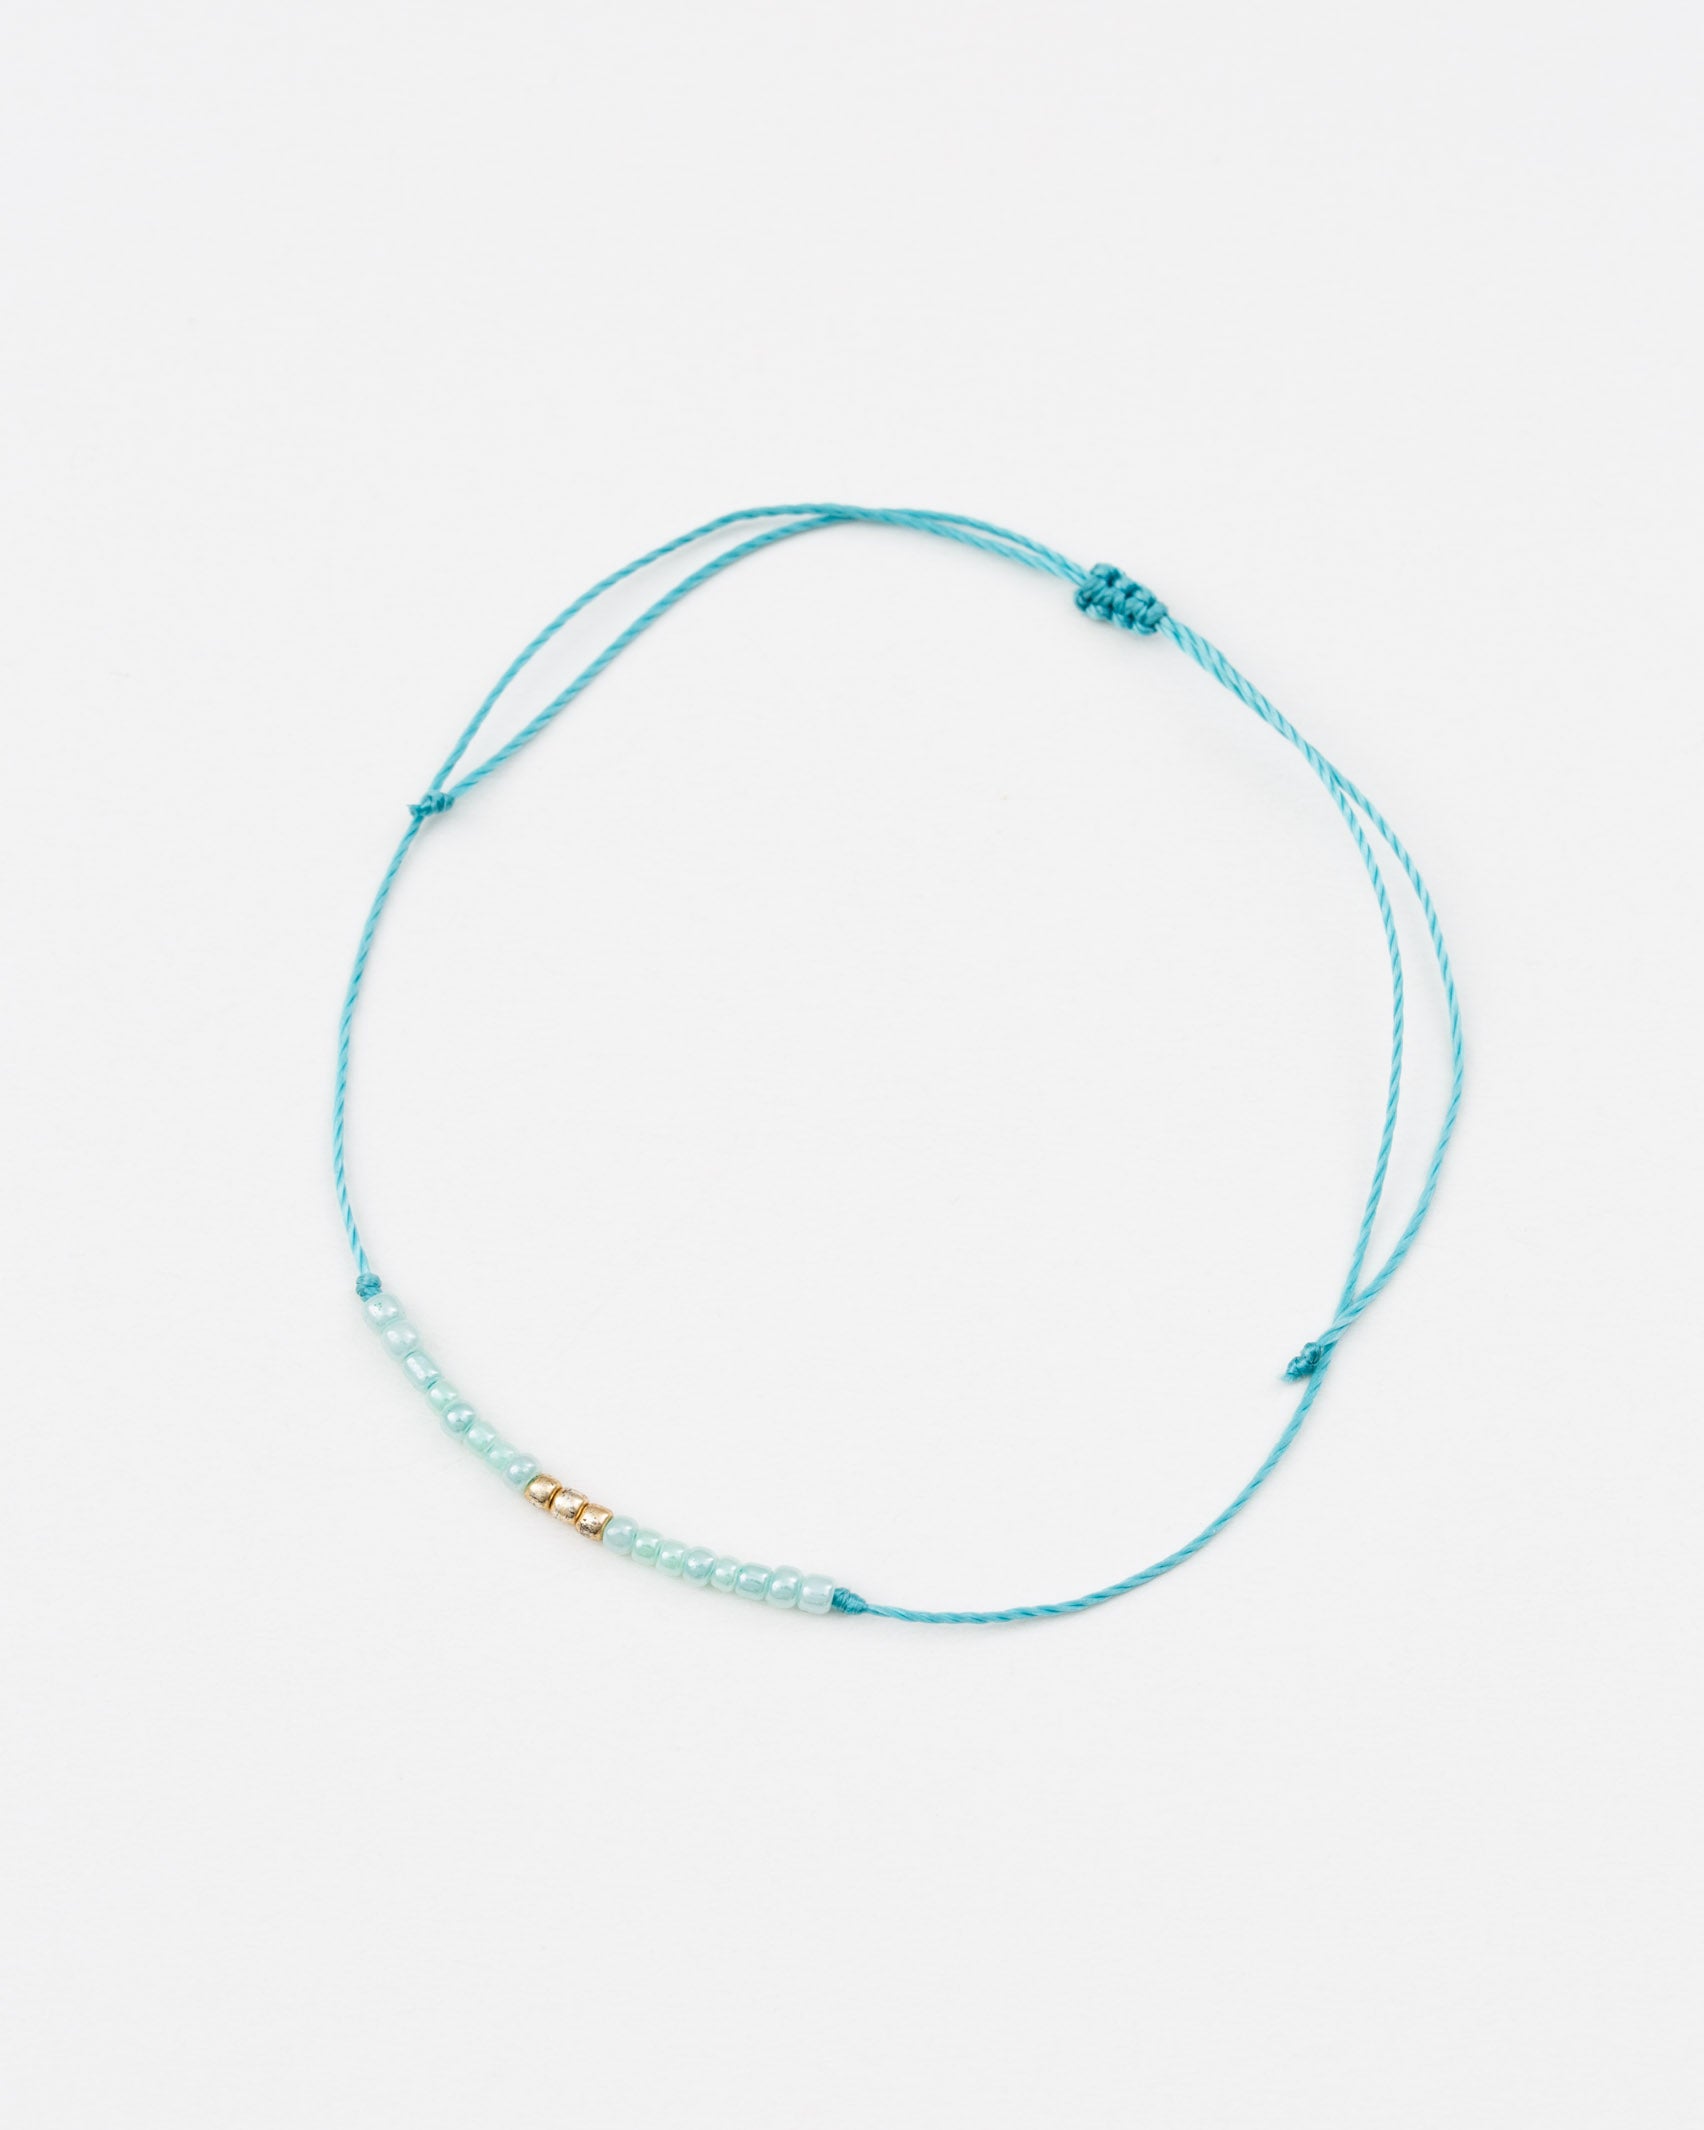 Armband mit kleinen Perlchen- Broke + Schön#farbe_turquoise